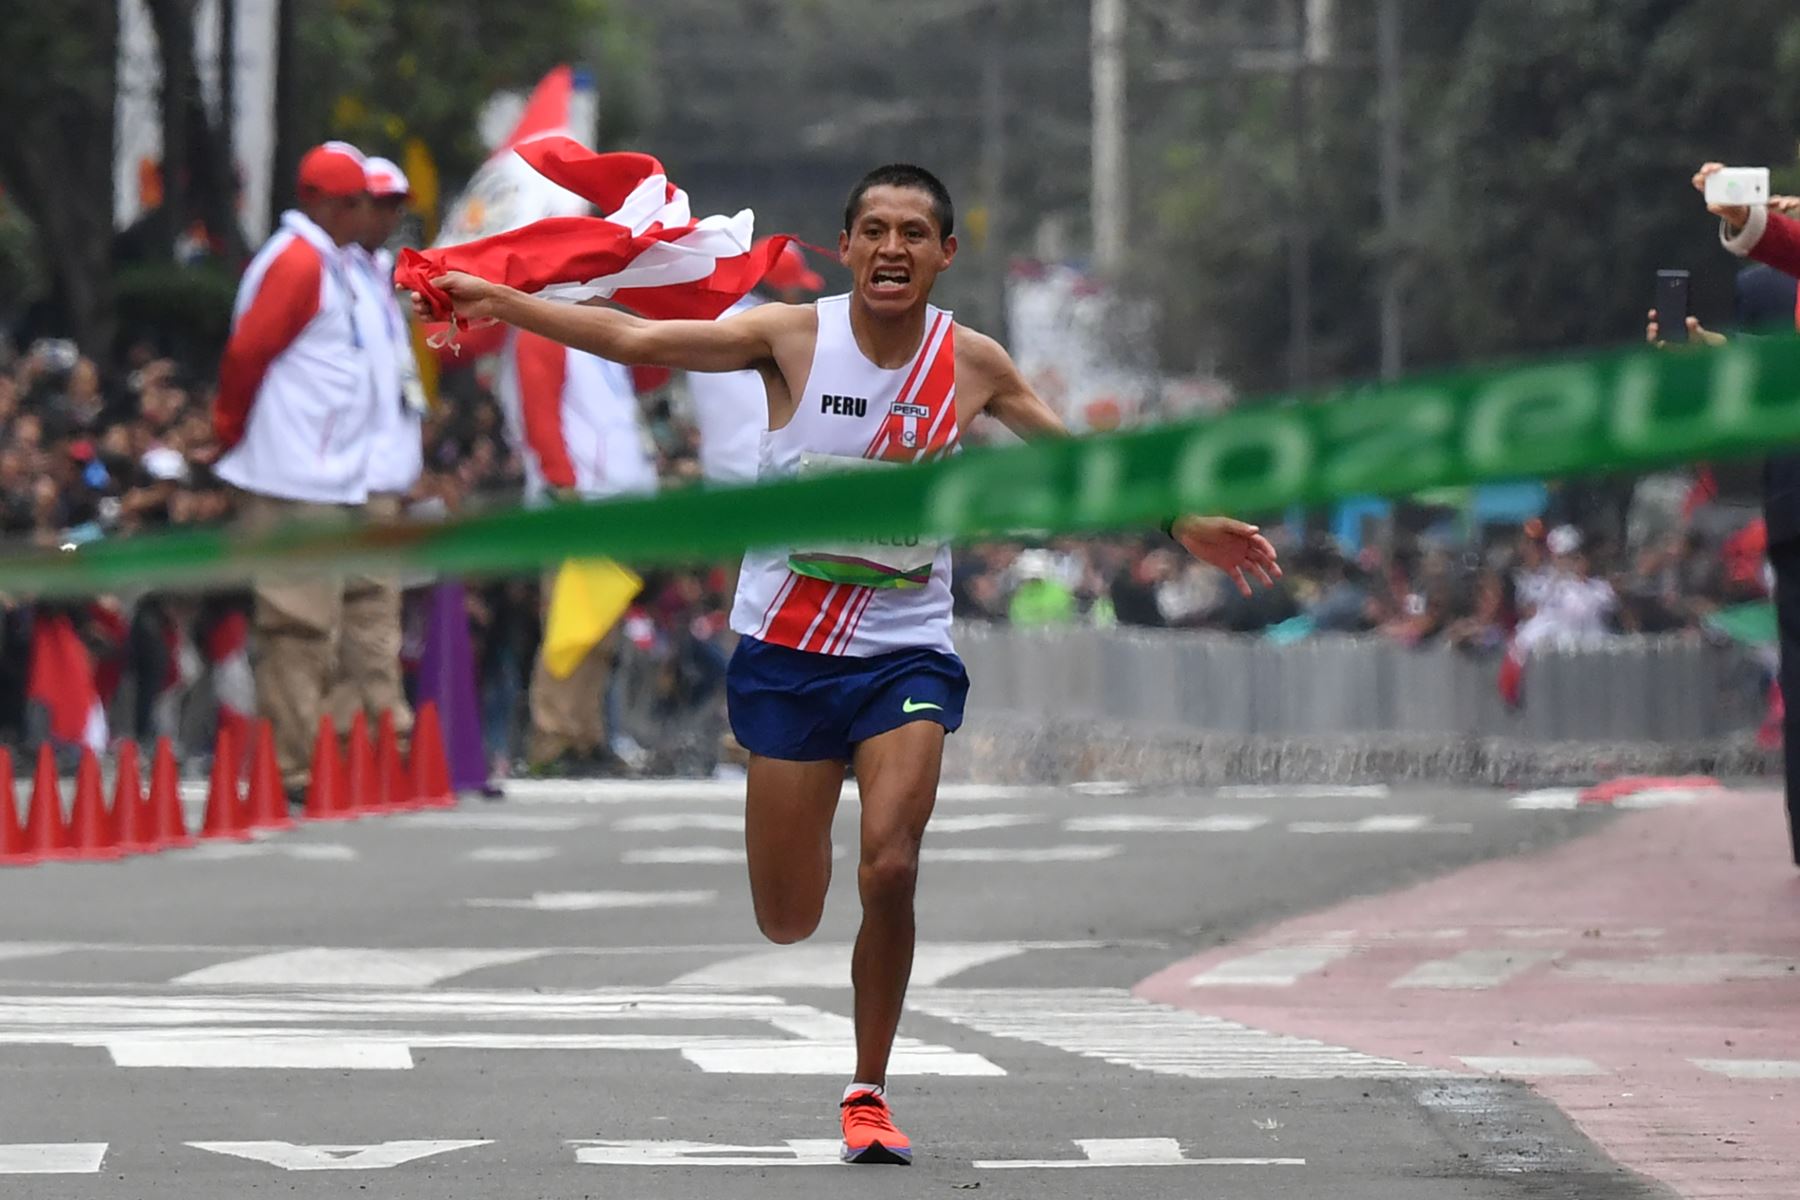 Christian Pacheco de Perú saluda a la gente mientras se acerca a la línea de meta para ganar la medalla de oro en el Maratón masculino de los Juegos Panamericanos Lima 2019. AFP